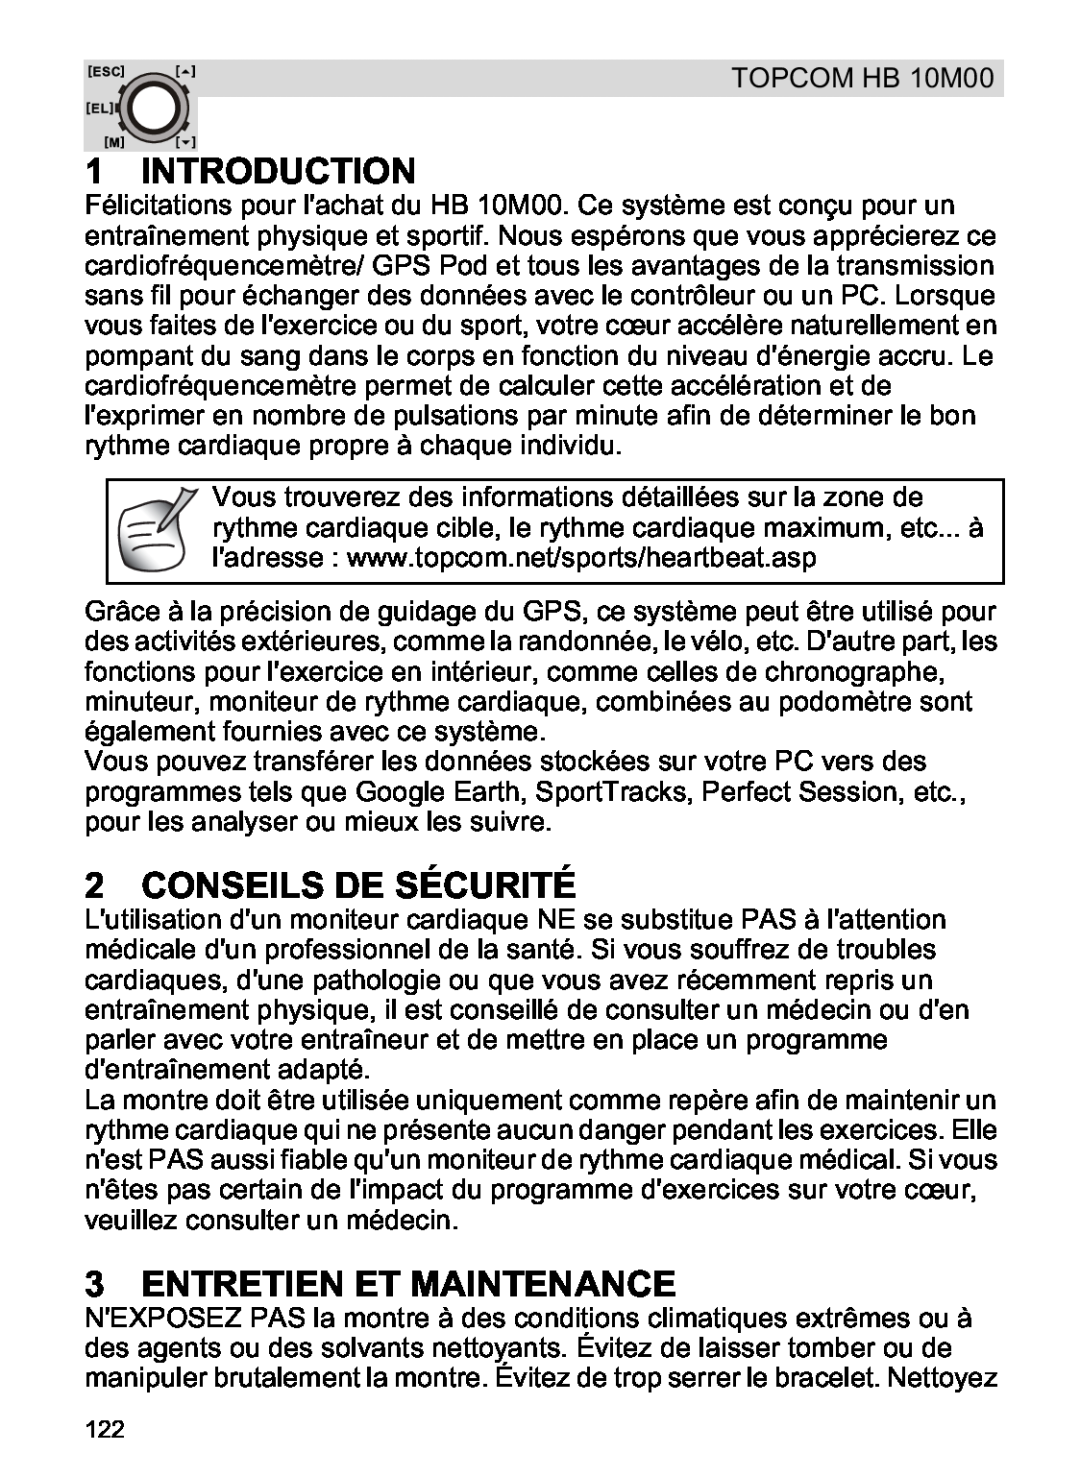 Topcom HB 10M00 manual Conseils De Sécurité, Entretien Et Maintenance, Introduction 